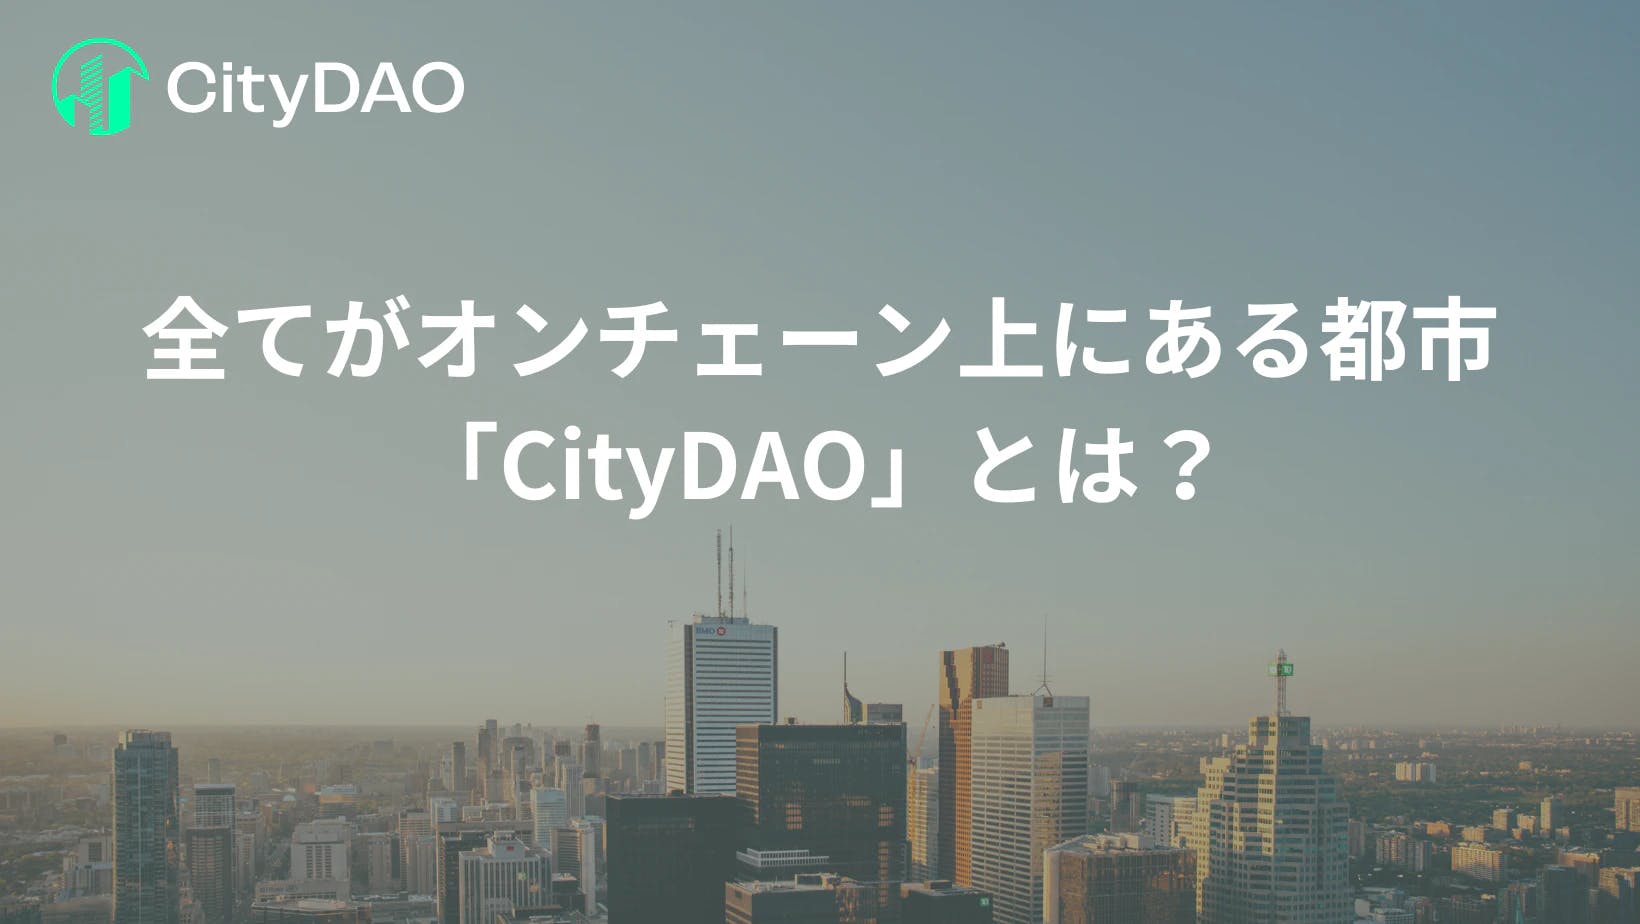 全てがオンチェーン上にある都市運営を実現する「CityDAO」とは？ thumbnail image